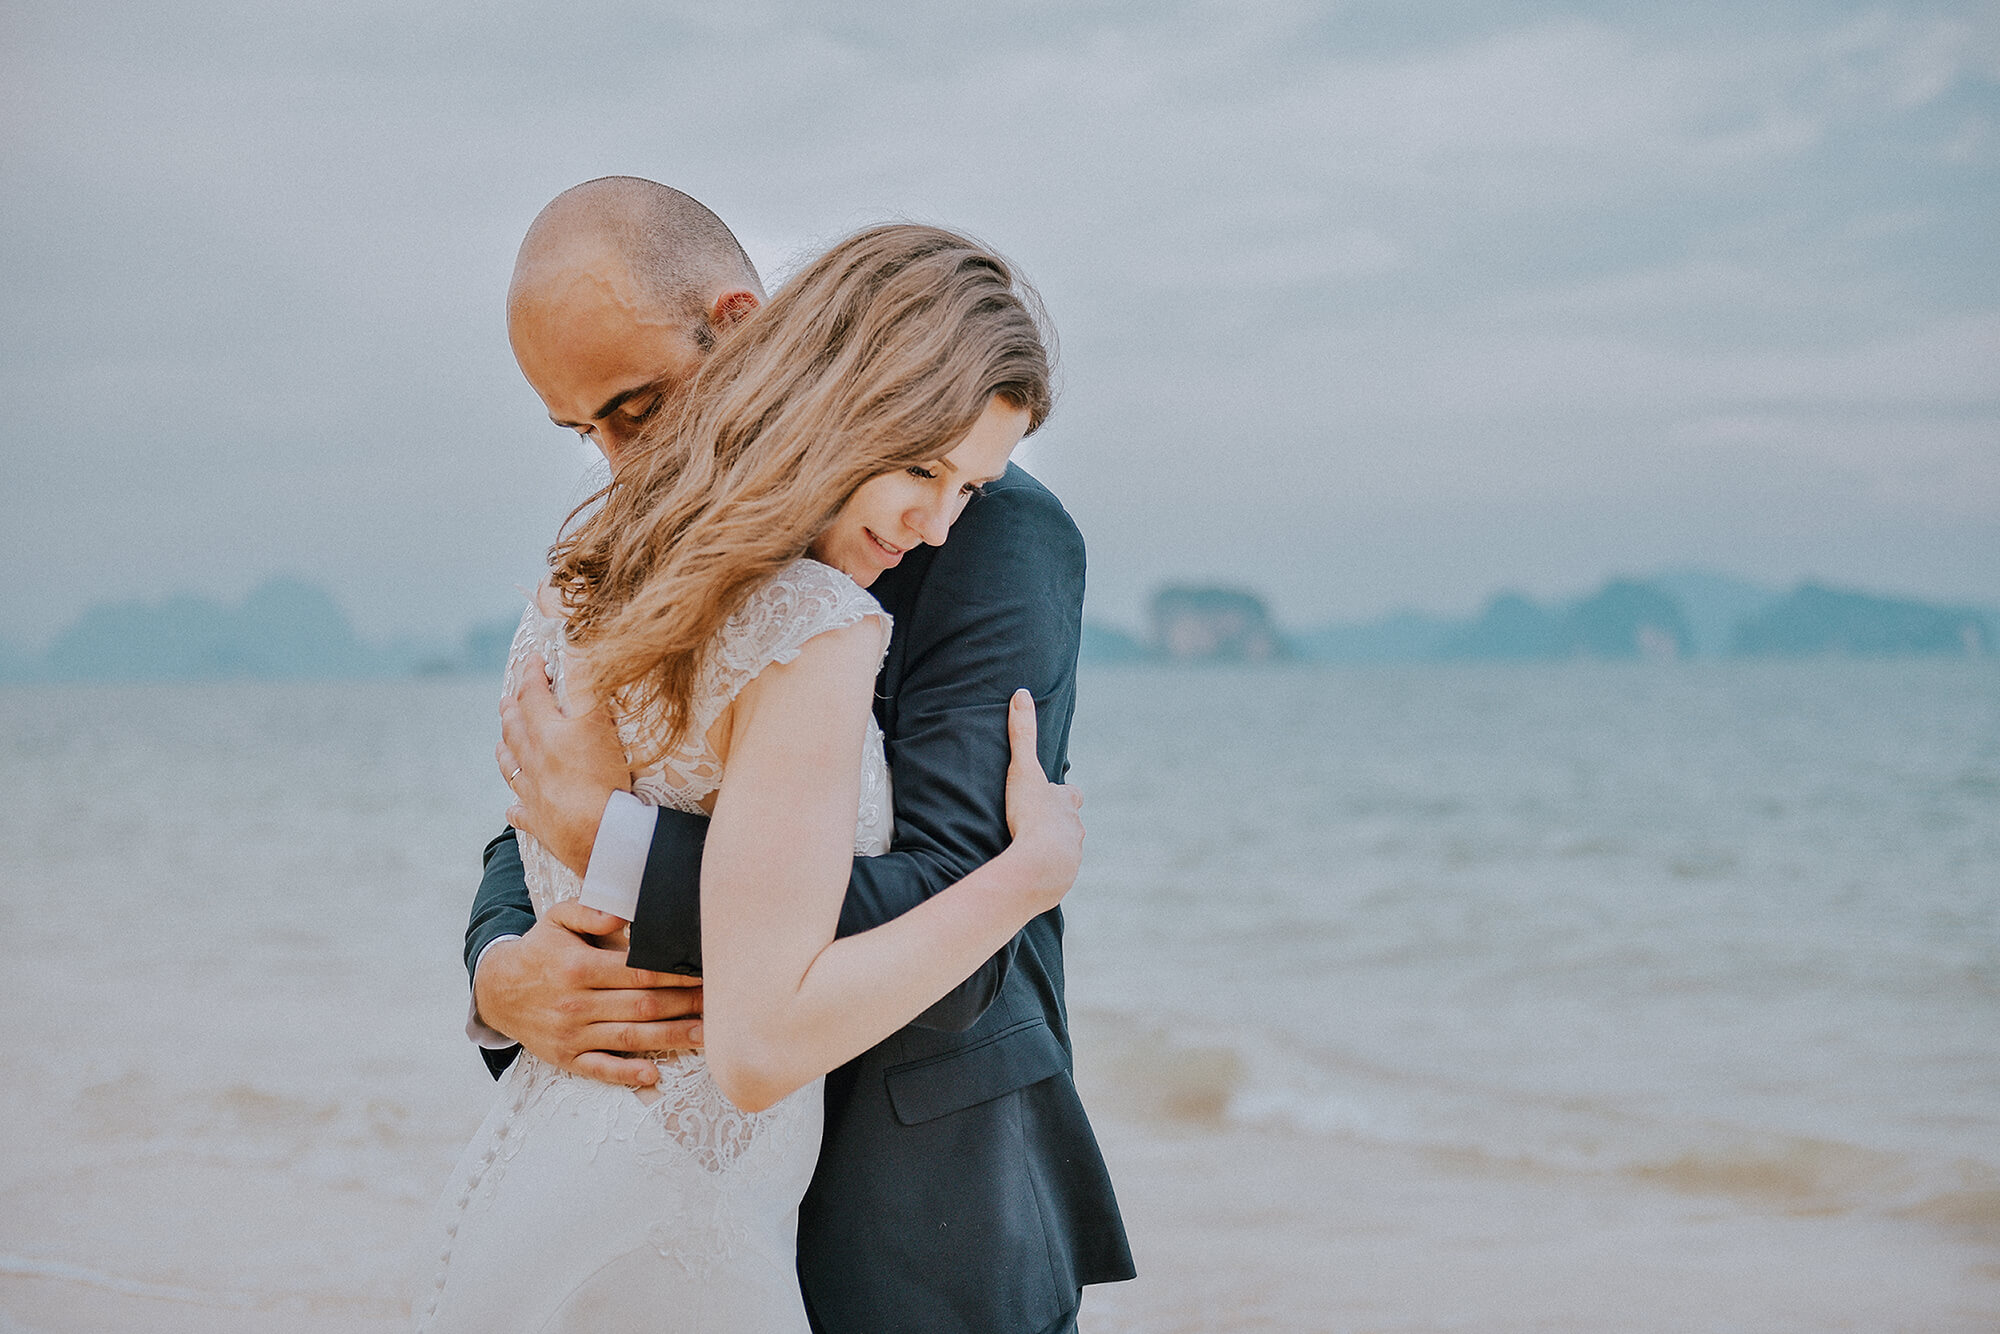 Koh Yao wedding honeymoon photographer